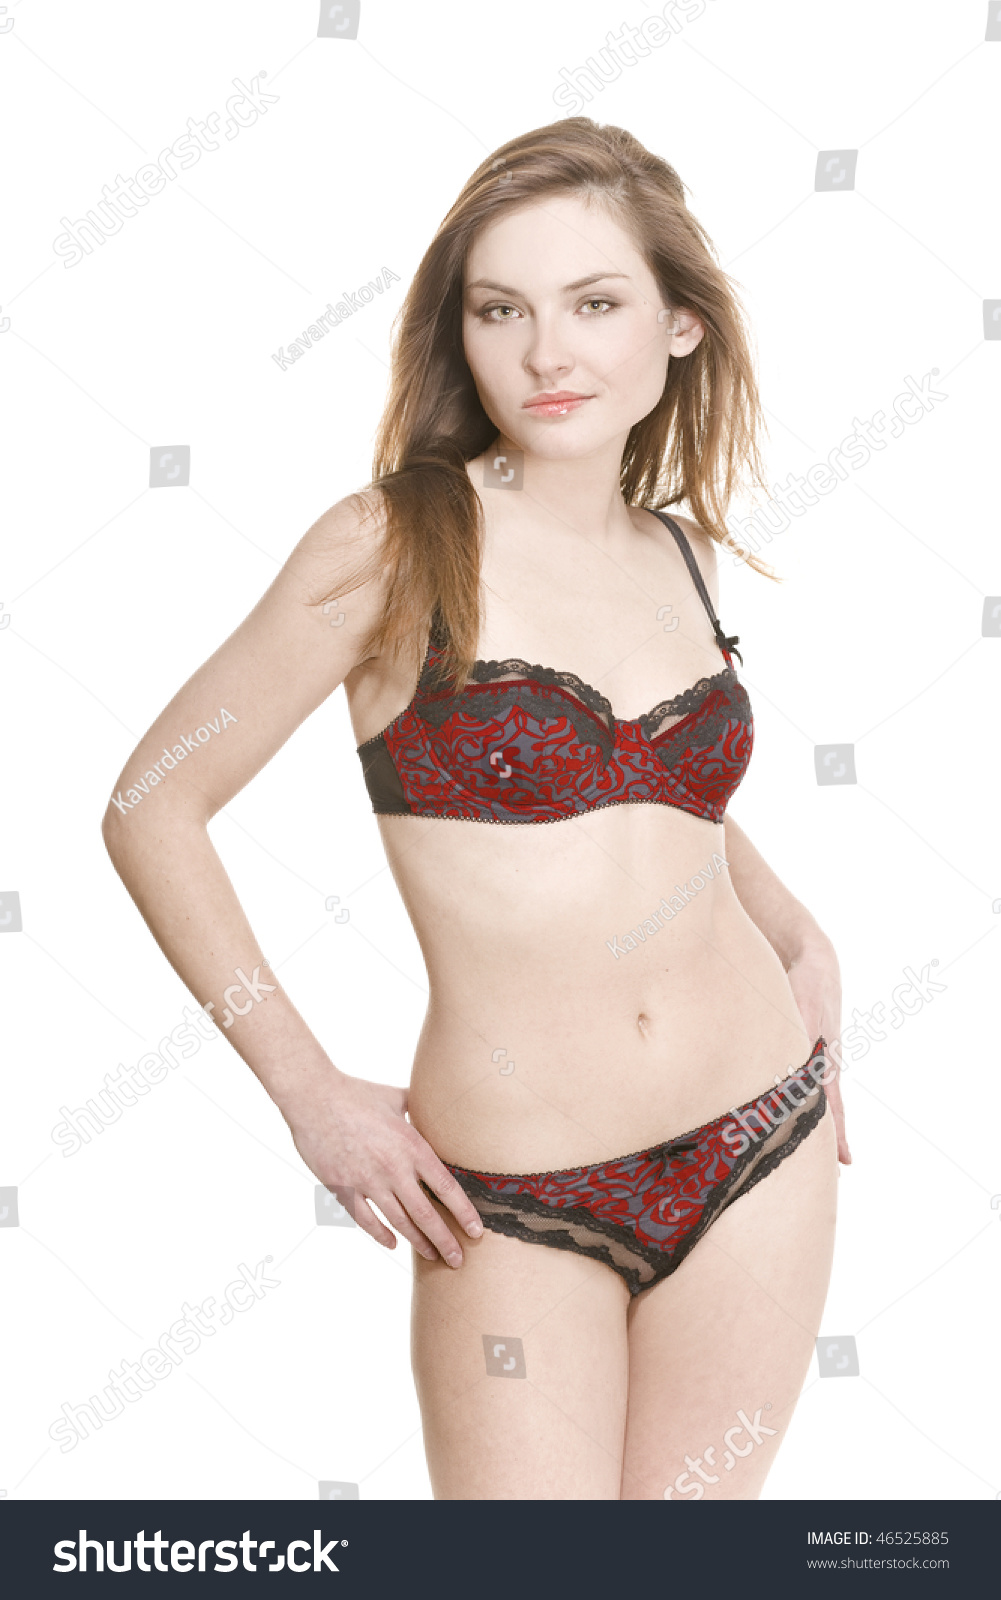 Girl Nude Underwear Model